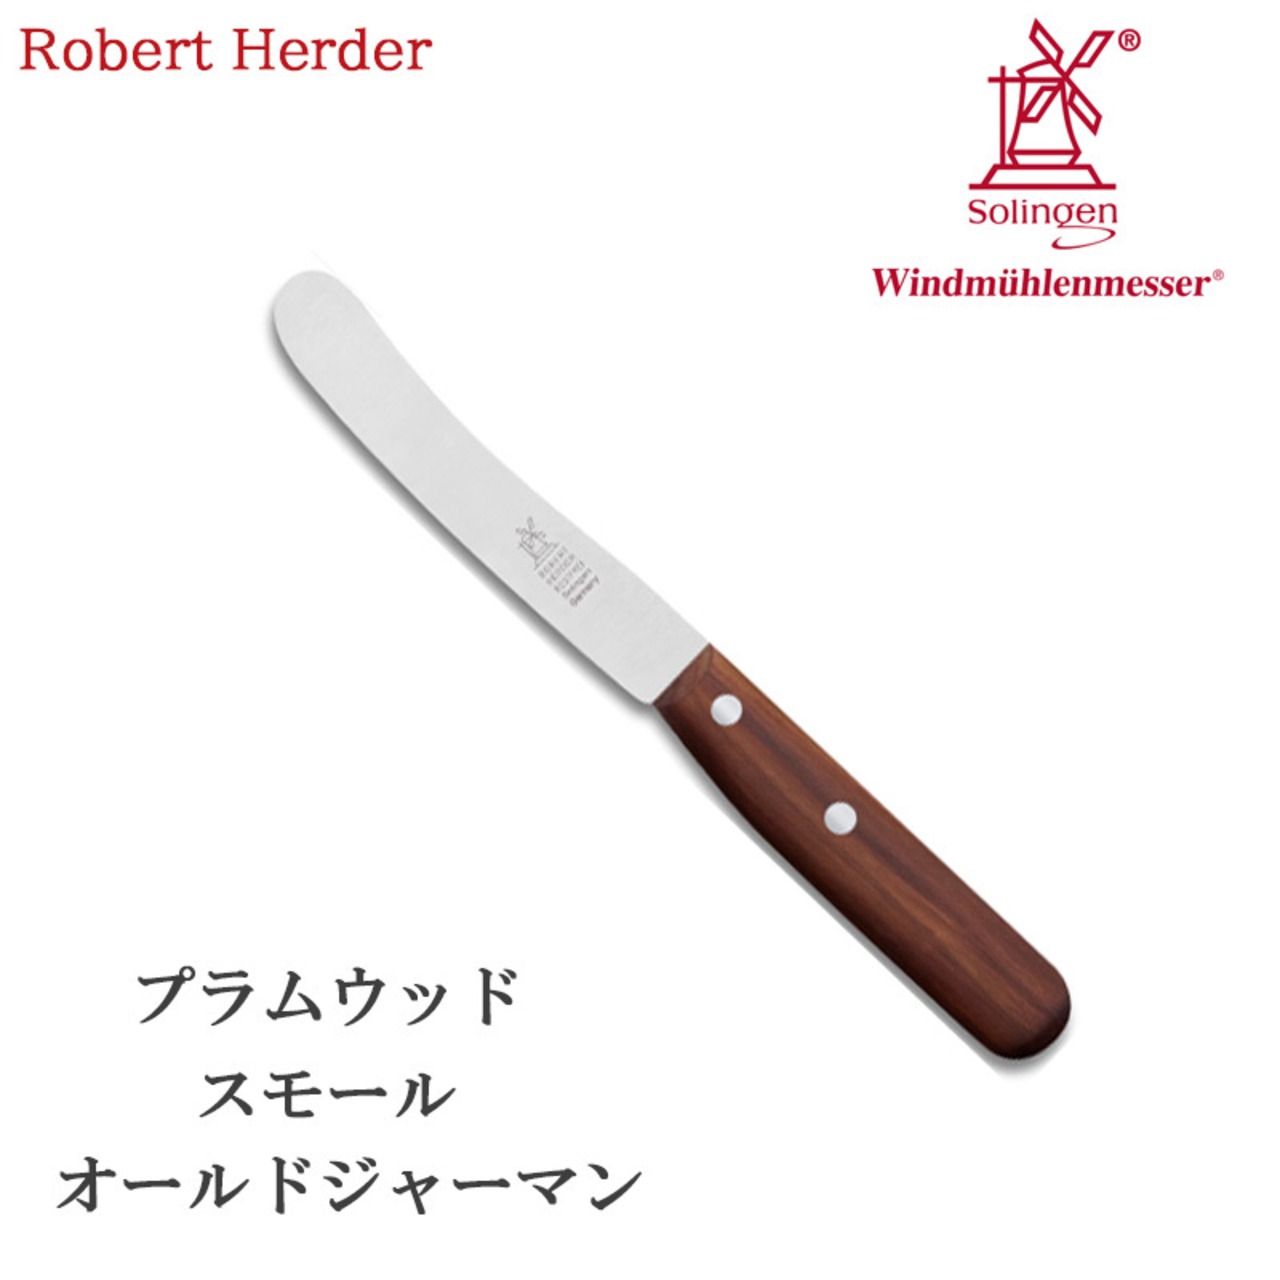 ロベルトヘアダー プラムウッド スモールオールドジャーマン(食卓用万能ナイフ) 2001.375.040002 テーブルナイフ